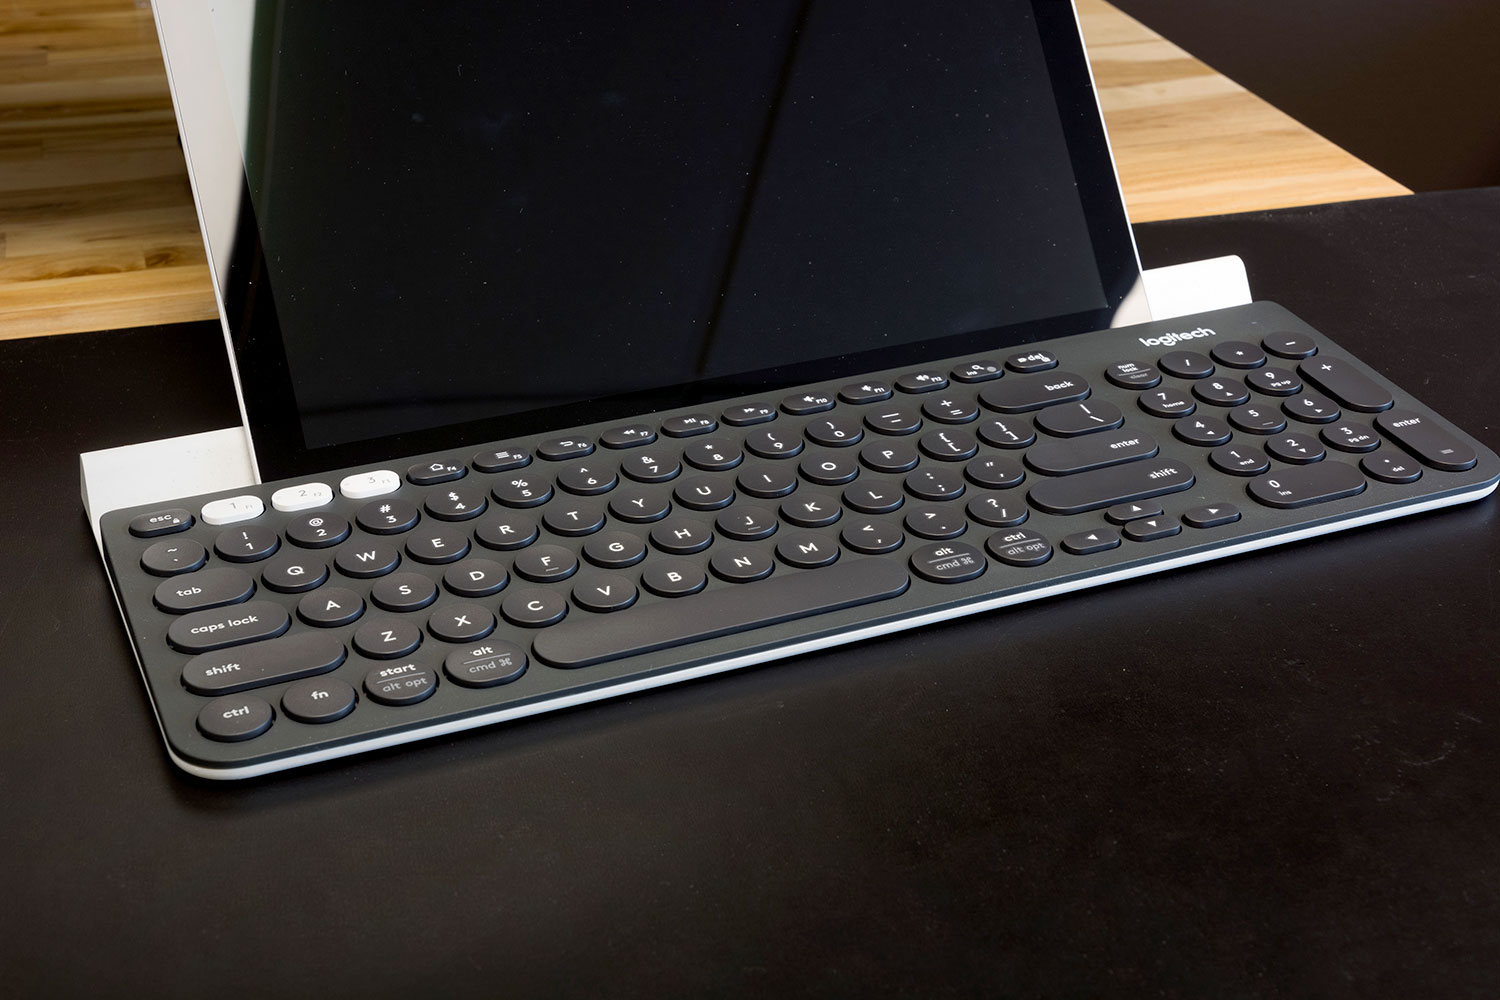 Logitech K780 Multi-Device Wireless Keyboard Review Digital Trends